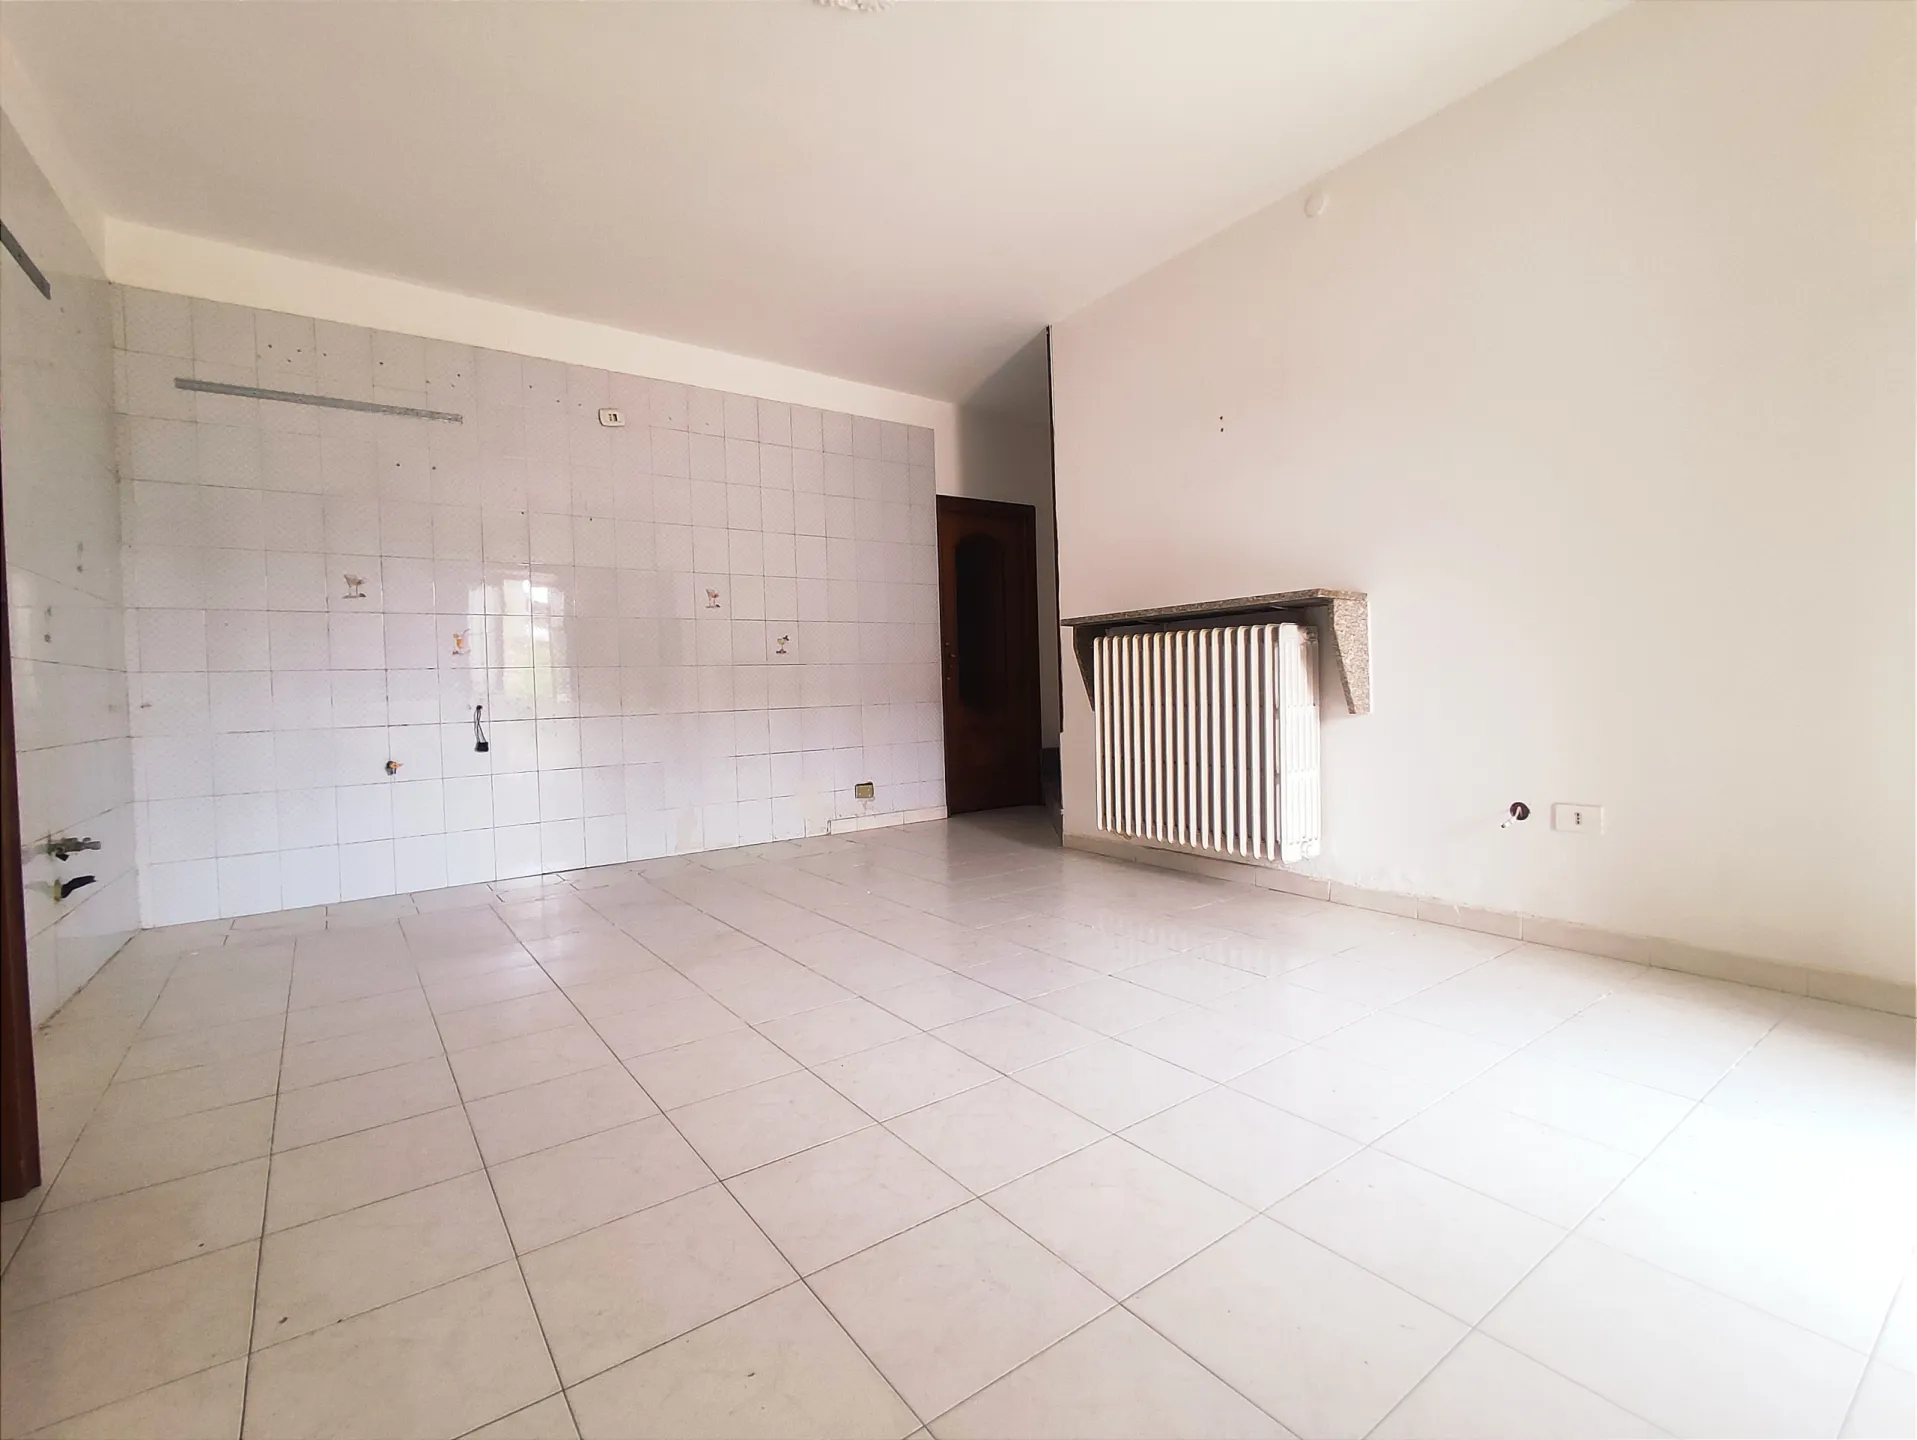 Immagine per casa semindipendente in vendita a Leini via Canova Pogliani 61